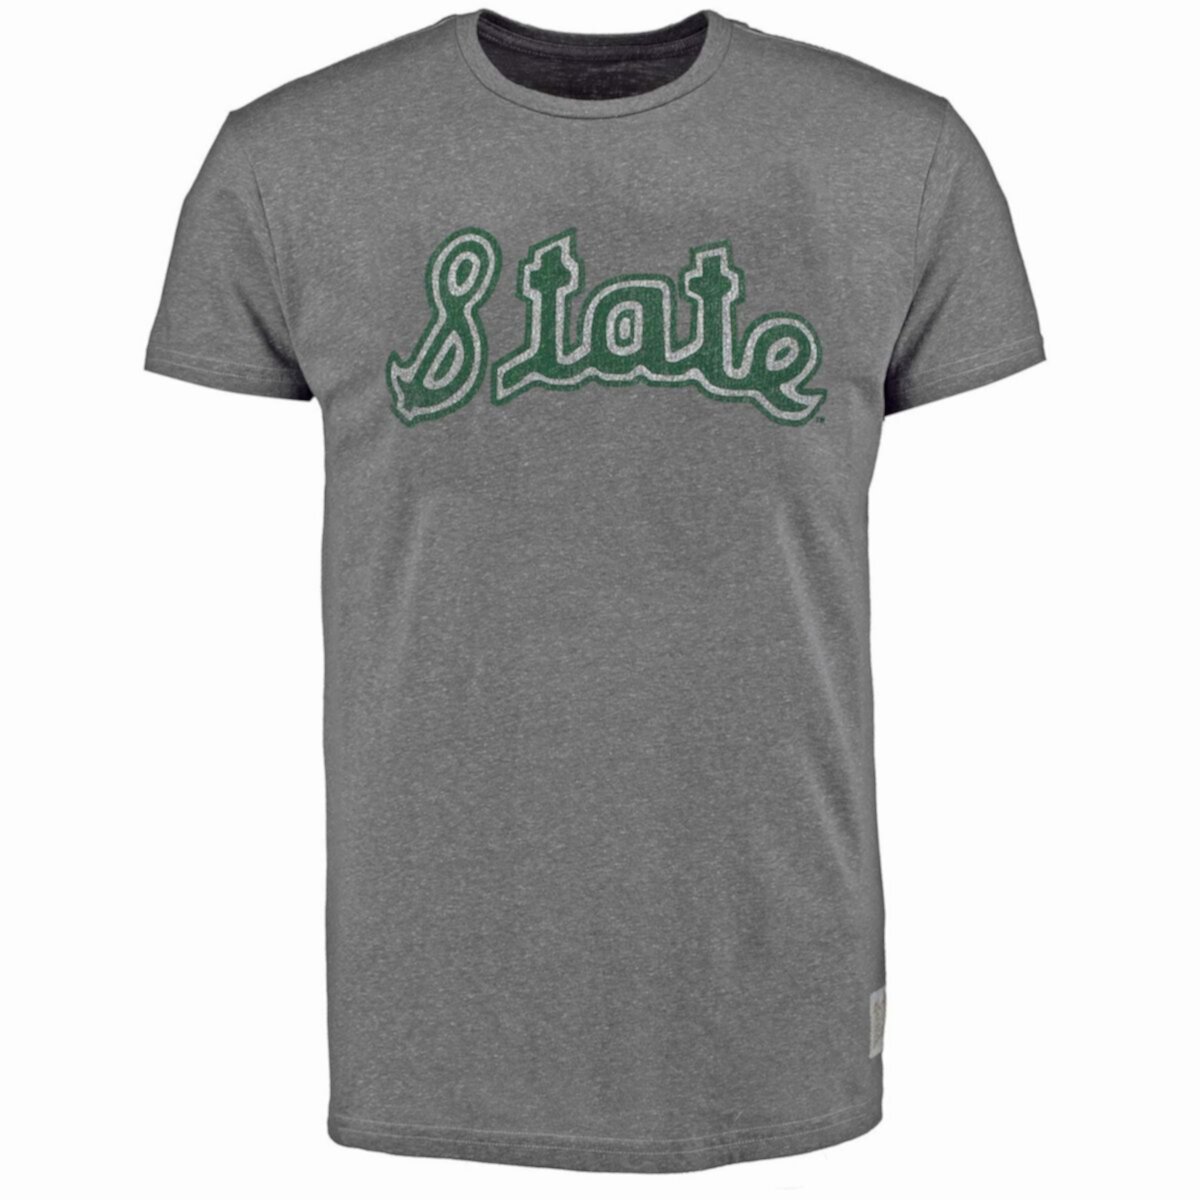 Мужская оригинальная серая футболка в стиле ретро с рисунком в стиле ретро Michigan State Spartans Vintage Tri-Blend Original Retro Brand